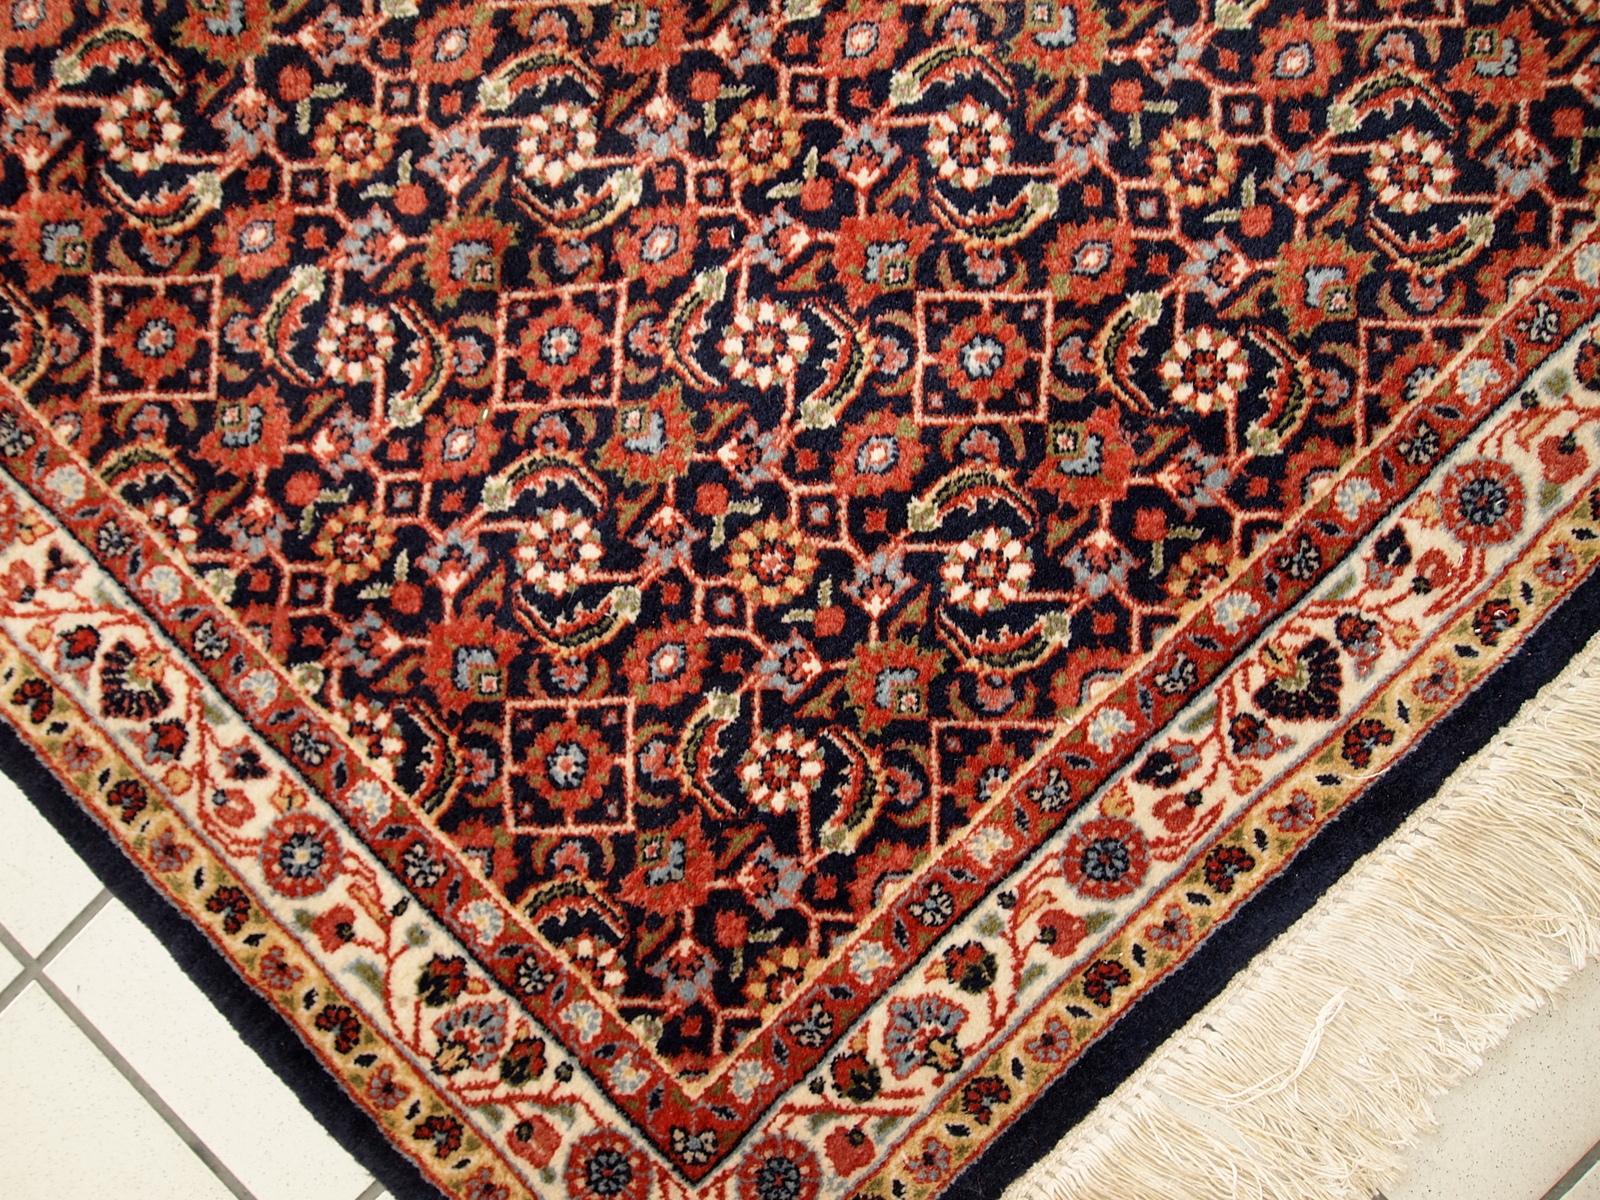 Handgefertigter alter Indo-Tabriz-Teppich aus Wolle. Der Teppich stammt aus dem Ende des 20. Jahrhunderts und ist in gutem Originalzustand.

-zustand: original gut,

-etwa: 1980er Jahre,

-größe: 3,3' x 4,2' (100cm x 130cm),

-material: